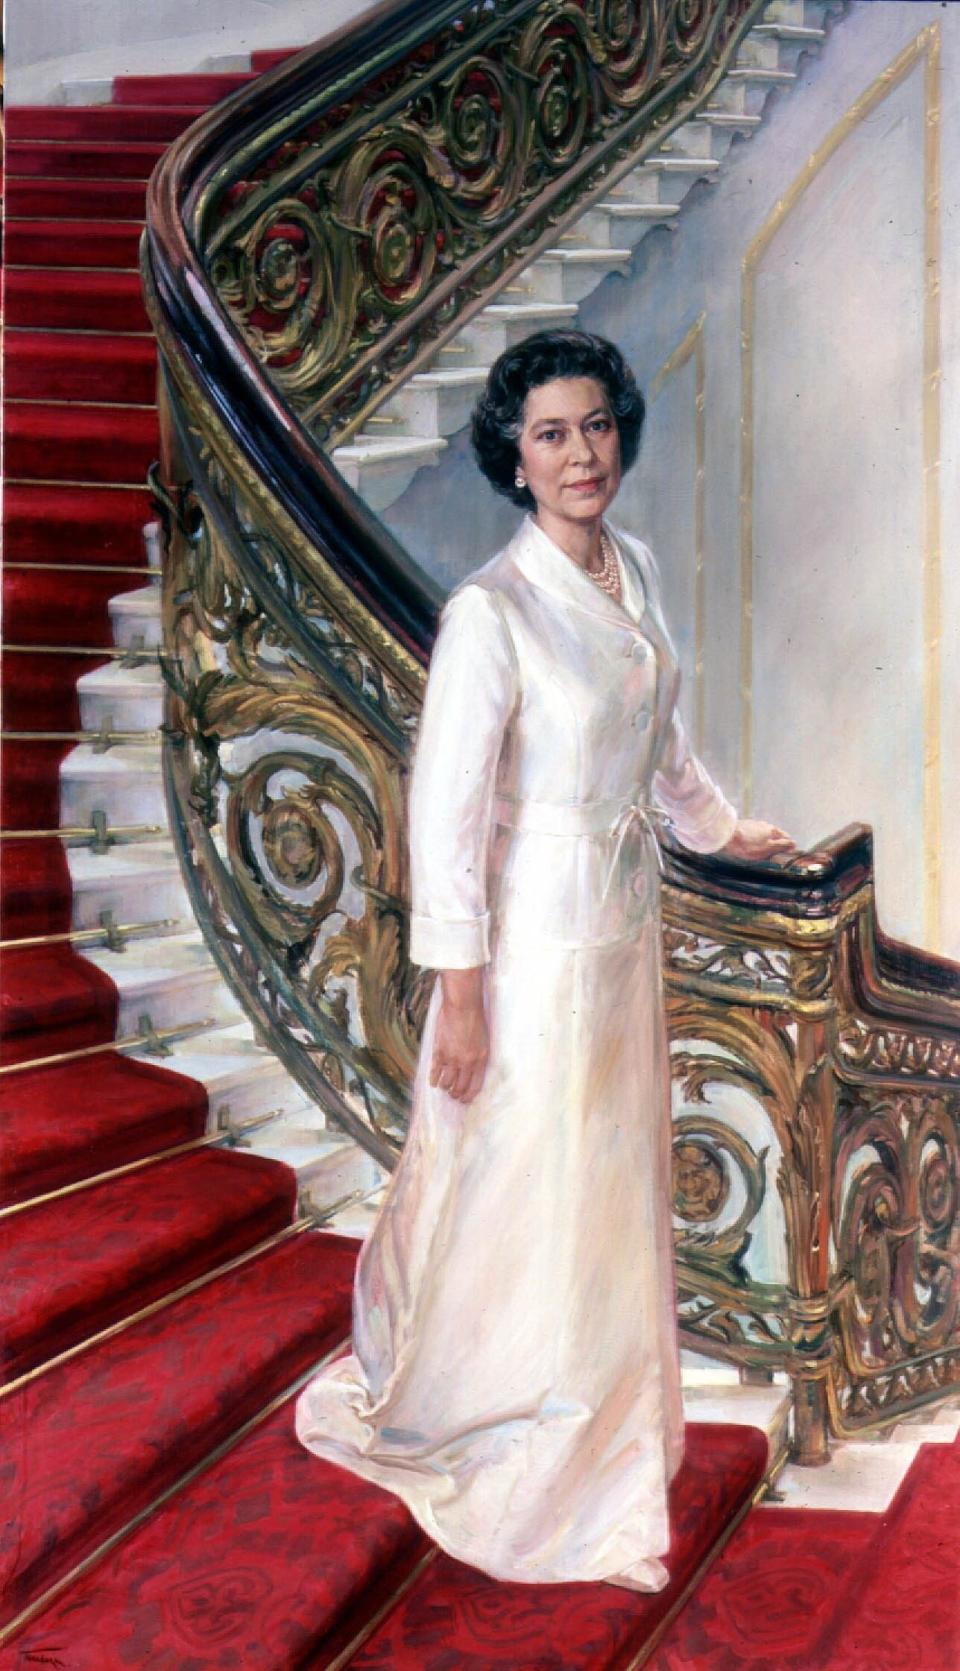 June Mendoza's 1981 portrait of the Queen